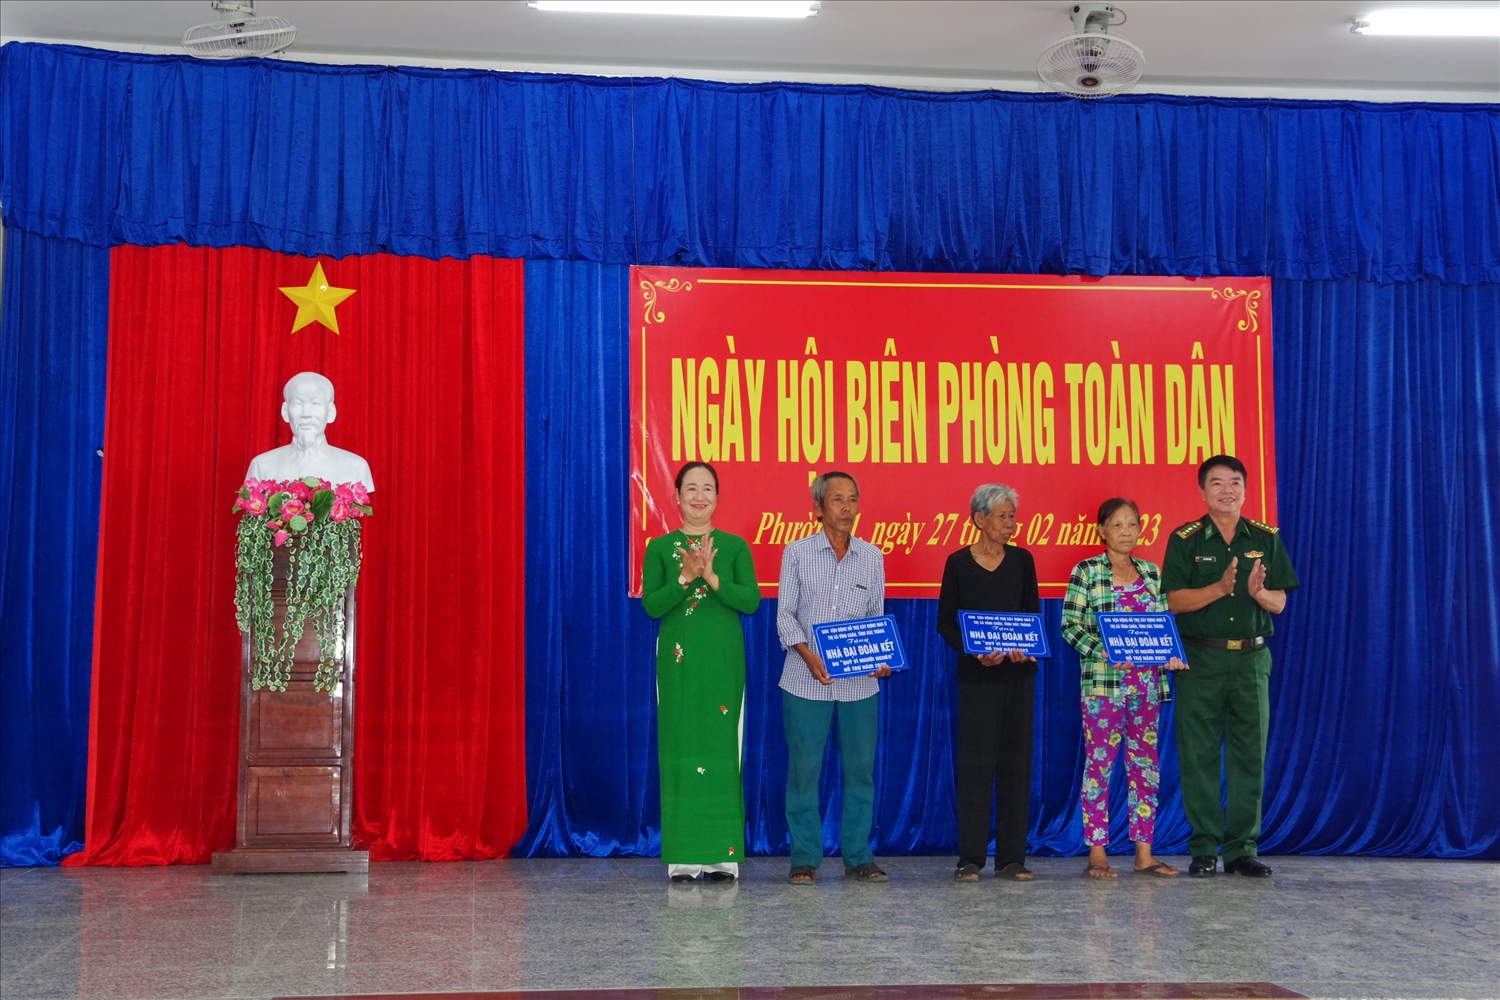 Lãnh đạo BĐBP tỉnh Sóc Trăng và Thị ủy Vĩnh Châu trao bảng tượng trưng tặng nhà đại đoàn kết cho các hộ gia đình có hoàn cảnh khó khăn